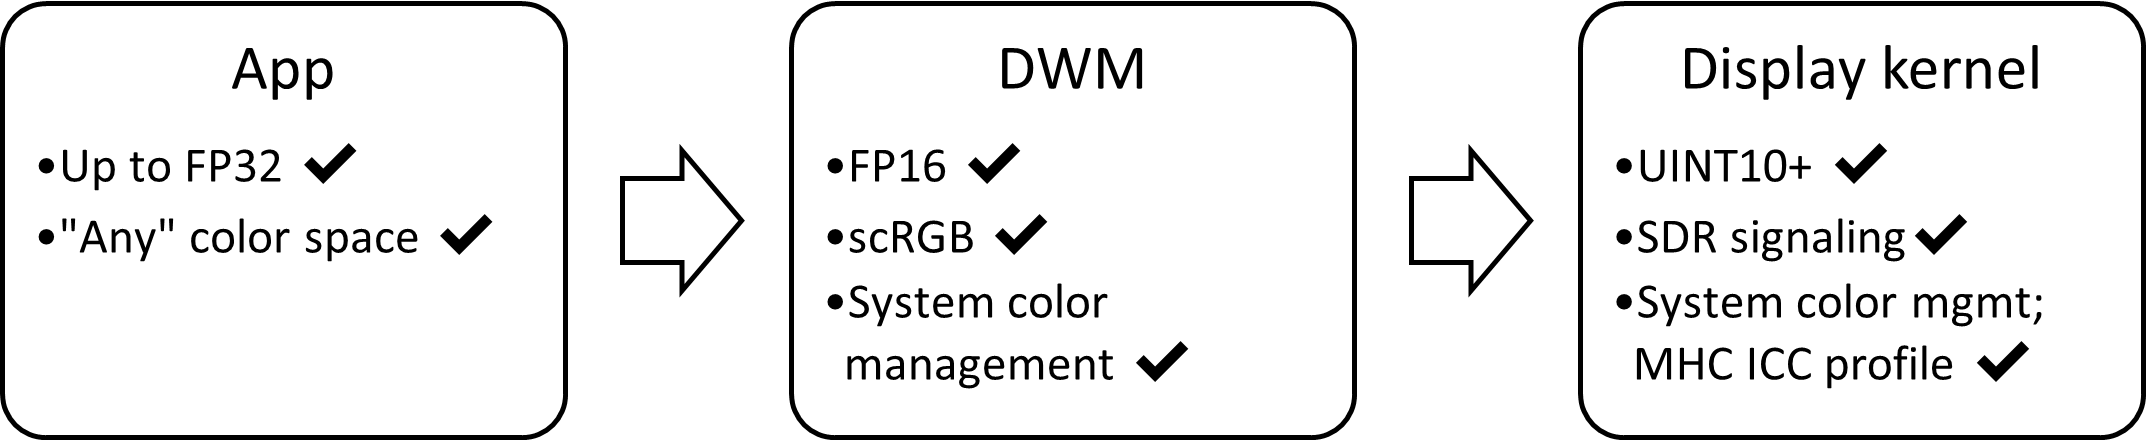 SDR AC ディスプレイ スタックのブロック図: FP16、scRGB、自動色管理